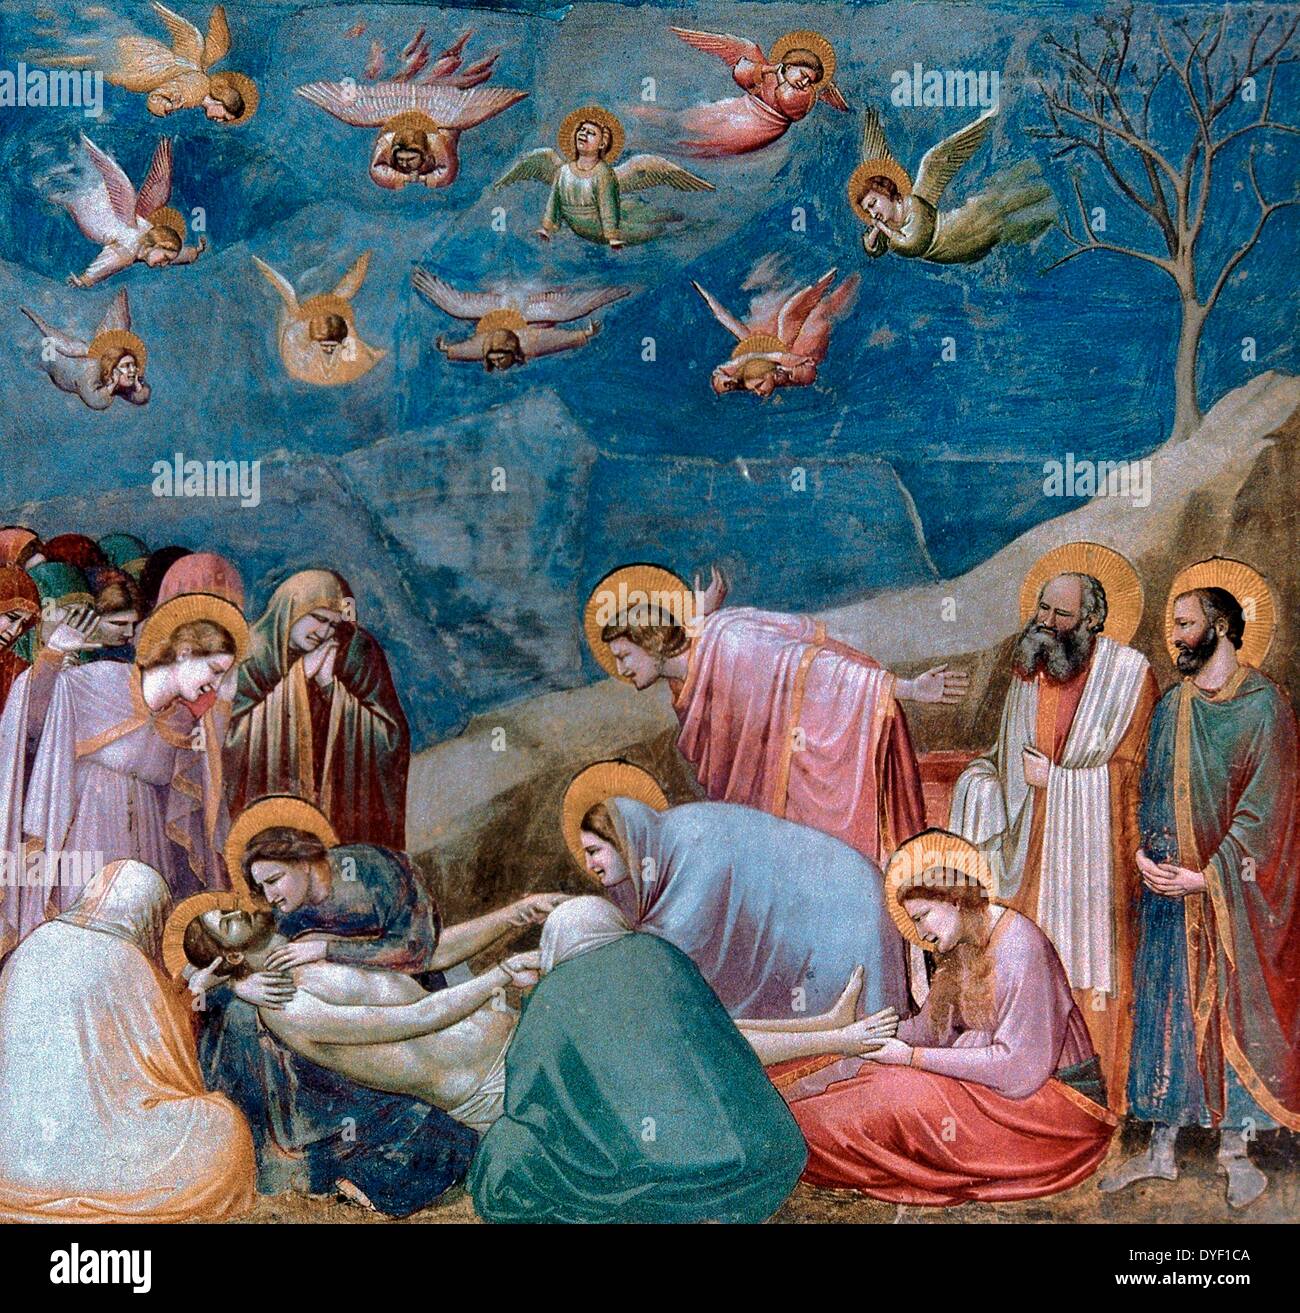 Abscheidung von Christus oder 'Klage', ein Fresko von florentinischen Maler Giotto di Bondone. Circa 1304-1306. Stockfoto